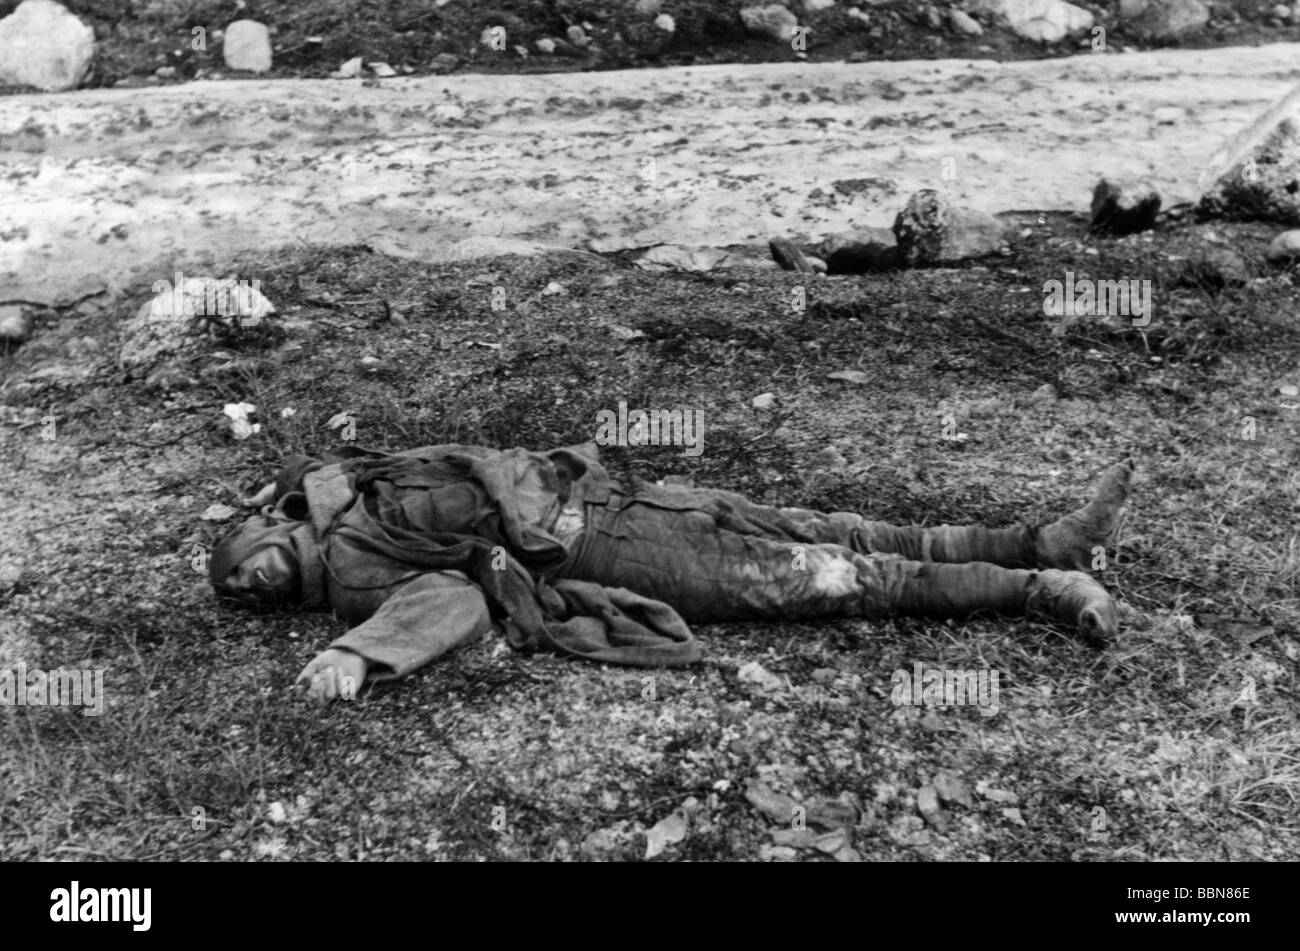 Événements, seconde Guerre mondiale / seconde Guerre mondiale, Russie, soldats tombés / corps morts, soldat soviétique tombé, vers 1942, Banque D'Images